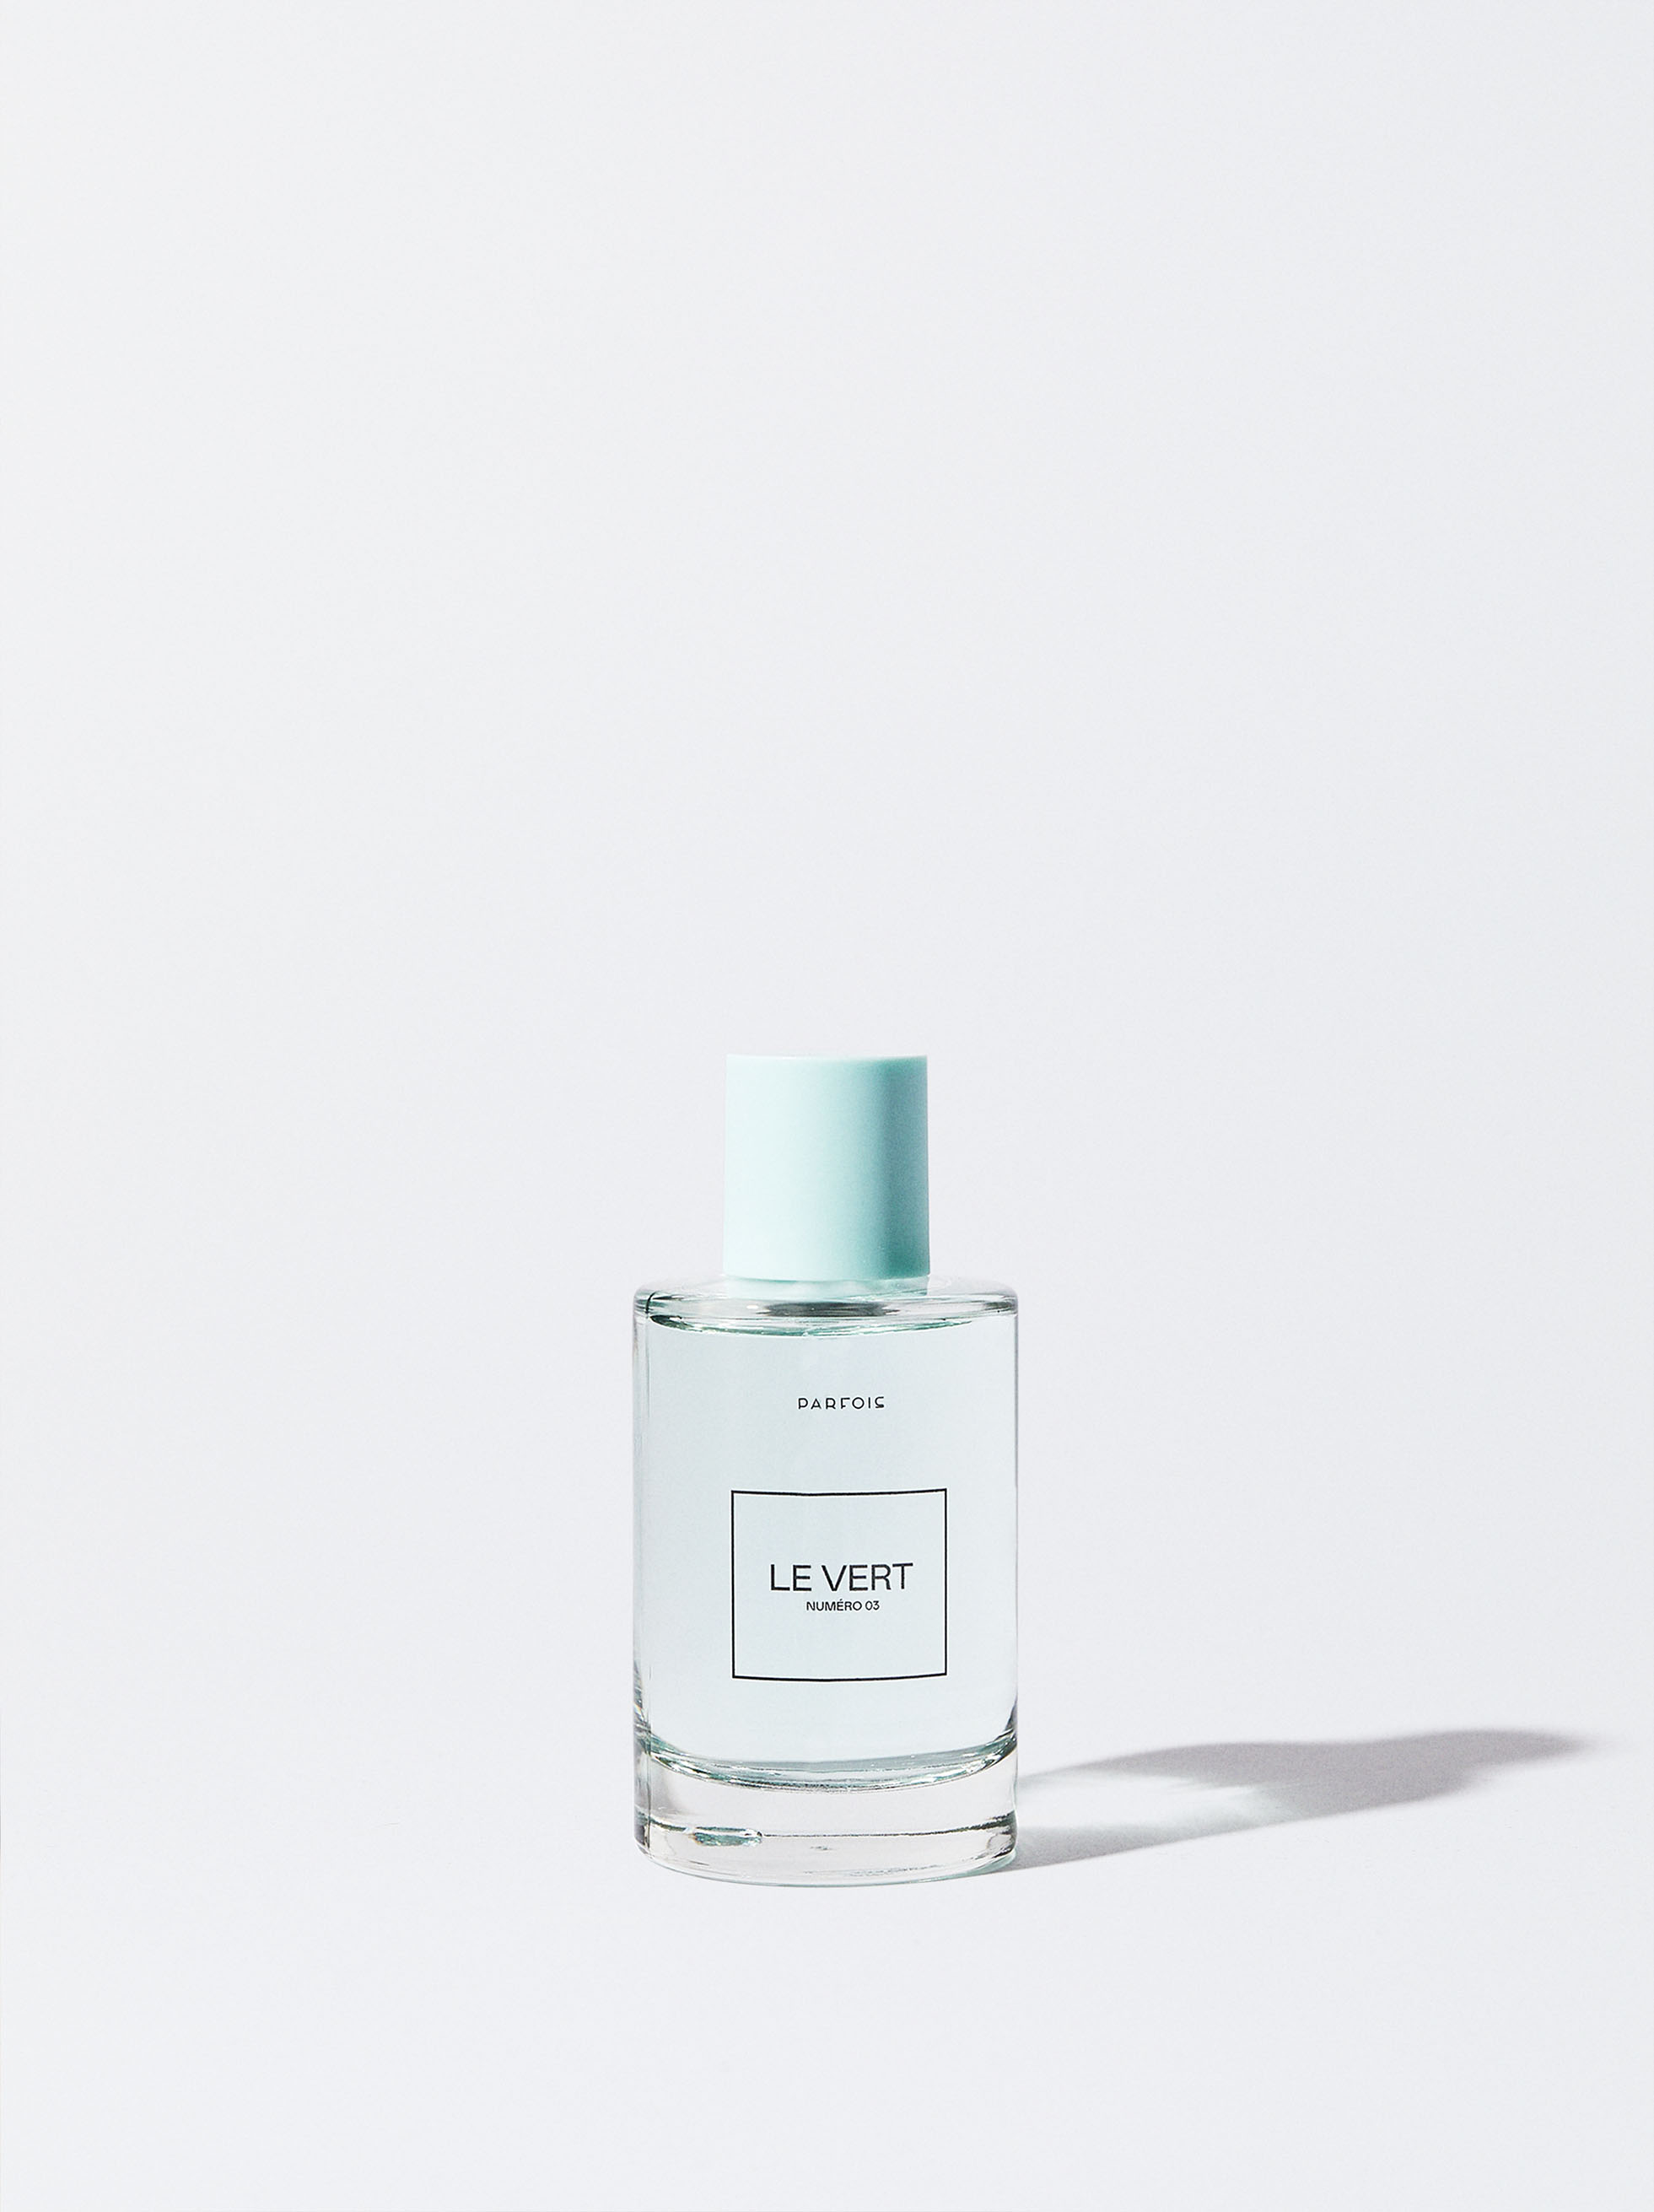 Le Numéro 03 Perfume - Le Vert - 100ml image number 2.0